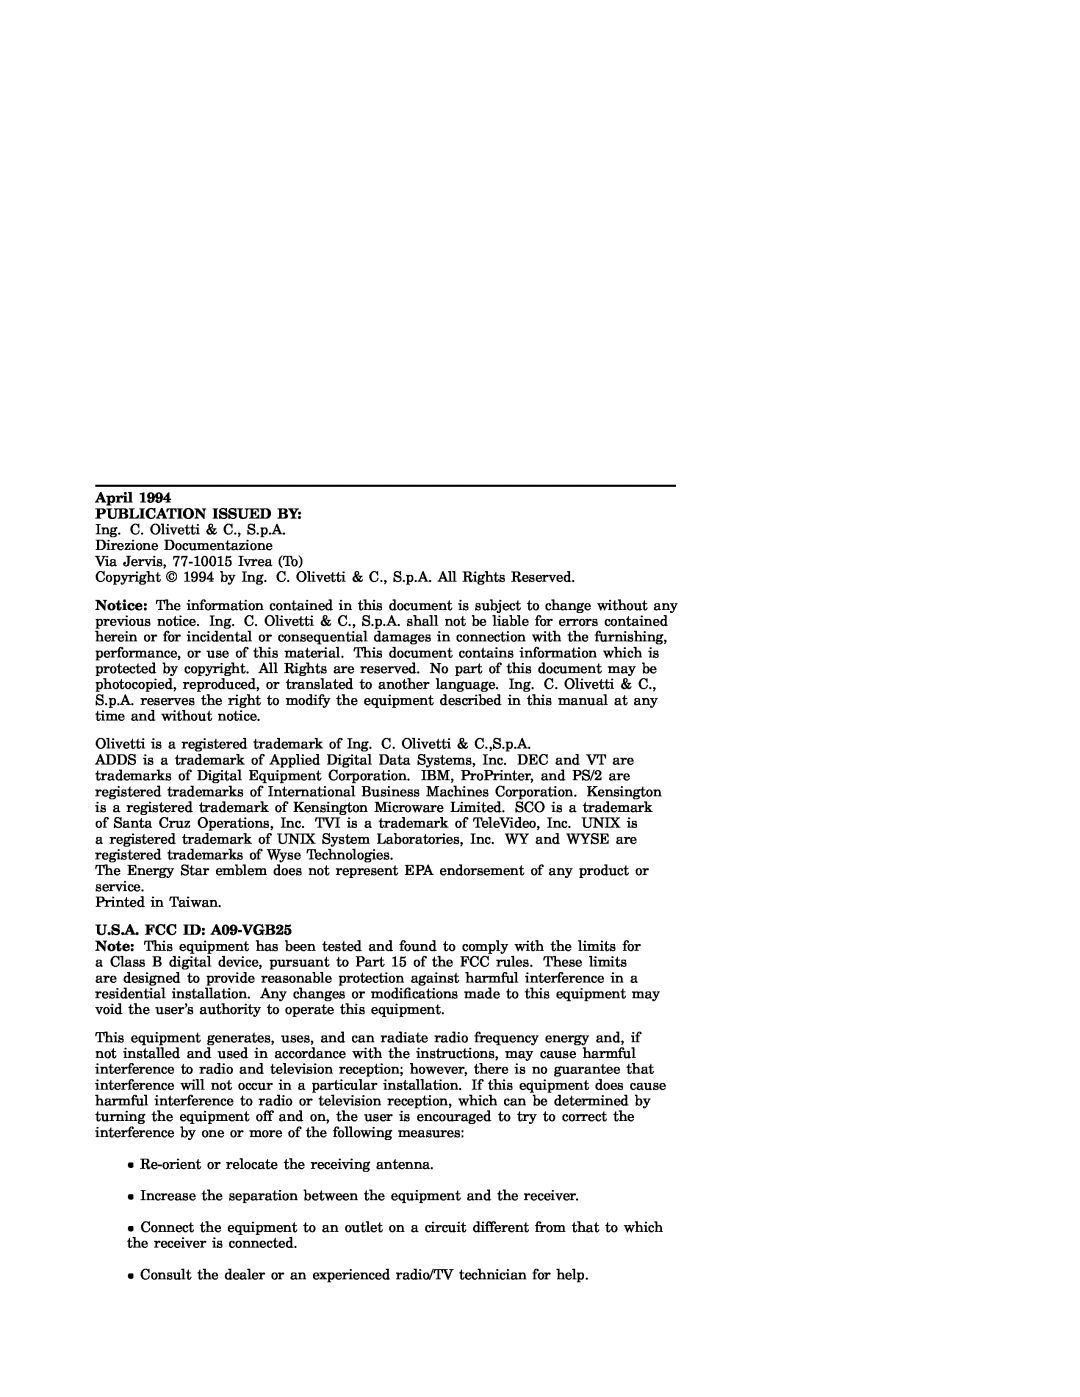 IBM WS525 manual April PUBLICATION ISSUED BY, U.S.A. FCC ID A09-VGB25 